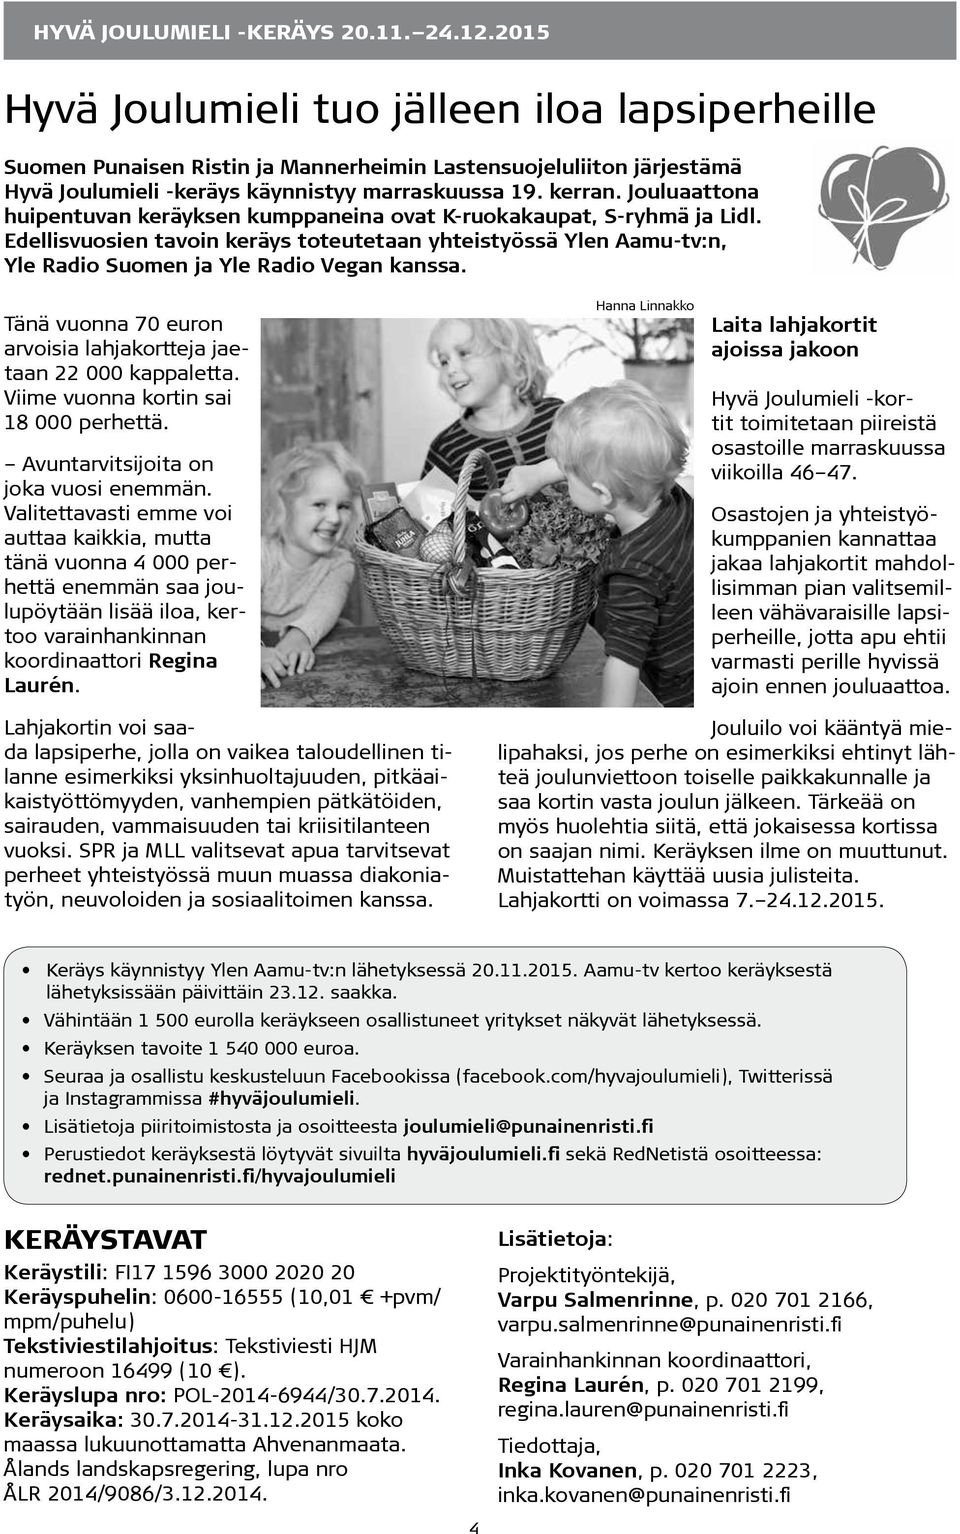 Jouluaattona huipentuvan keräyksen kumppaneina ovat K-ruokakaupat, S-ryhmä ja Lidl. Edellisvuosien tavoin keräys toteutetaan yhteistyössä Ylen Aamu-tv:n, Yle Radio Suomen ja Yle Radio Vegan kanssa.